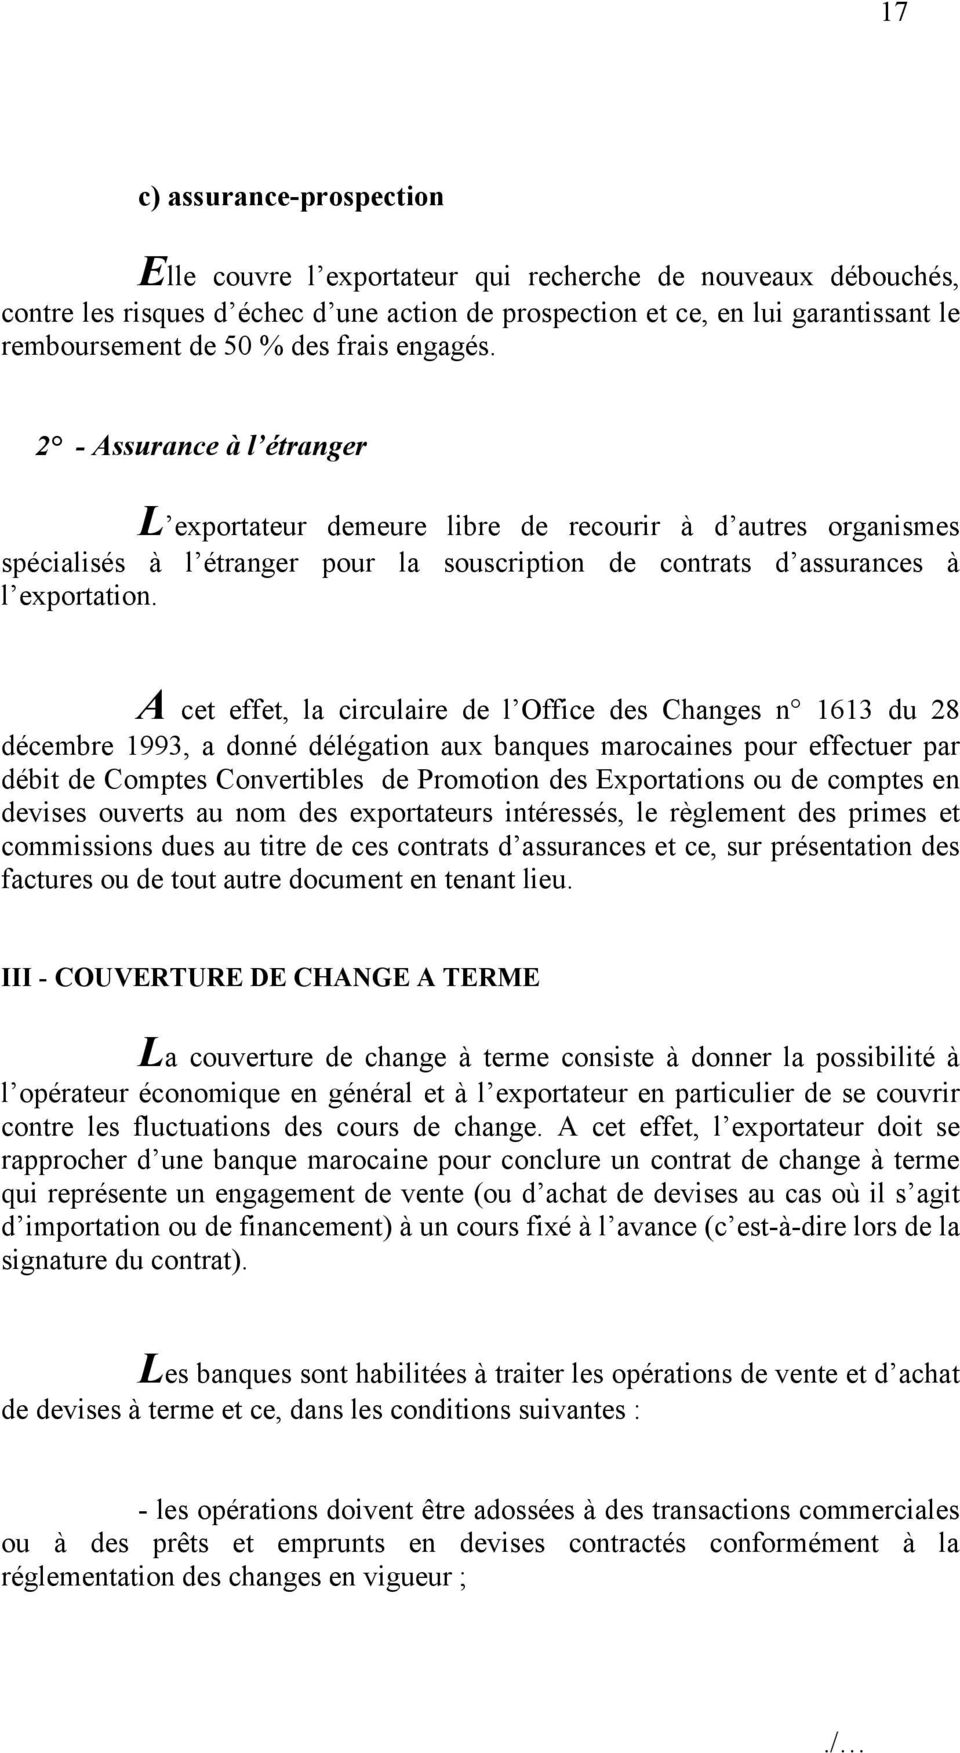 A cet effet, la circulaire de l Office des Changes n 1613 du 28 décembre 1993, a donné délégation aux banques marocaines pour effectuer par débit de Comptes Convertibles de Promotion des Exportations